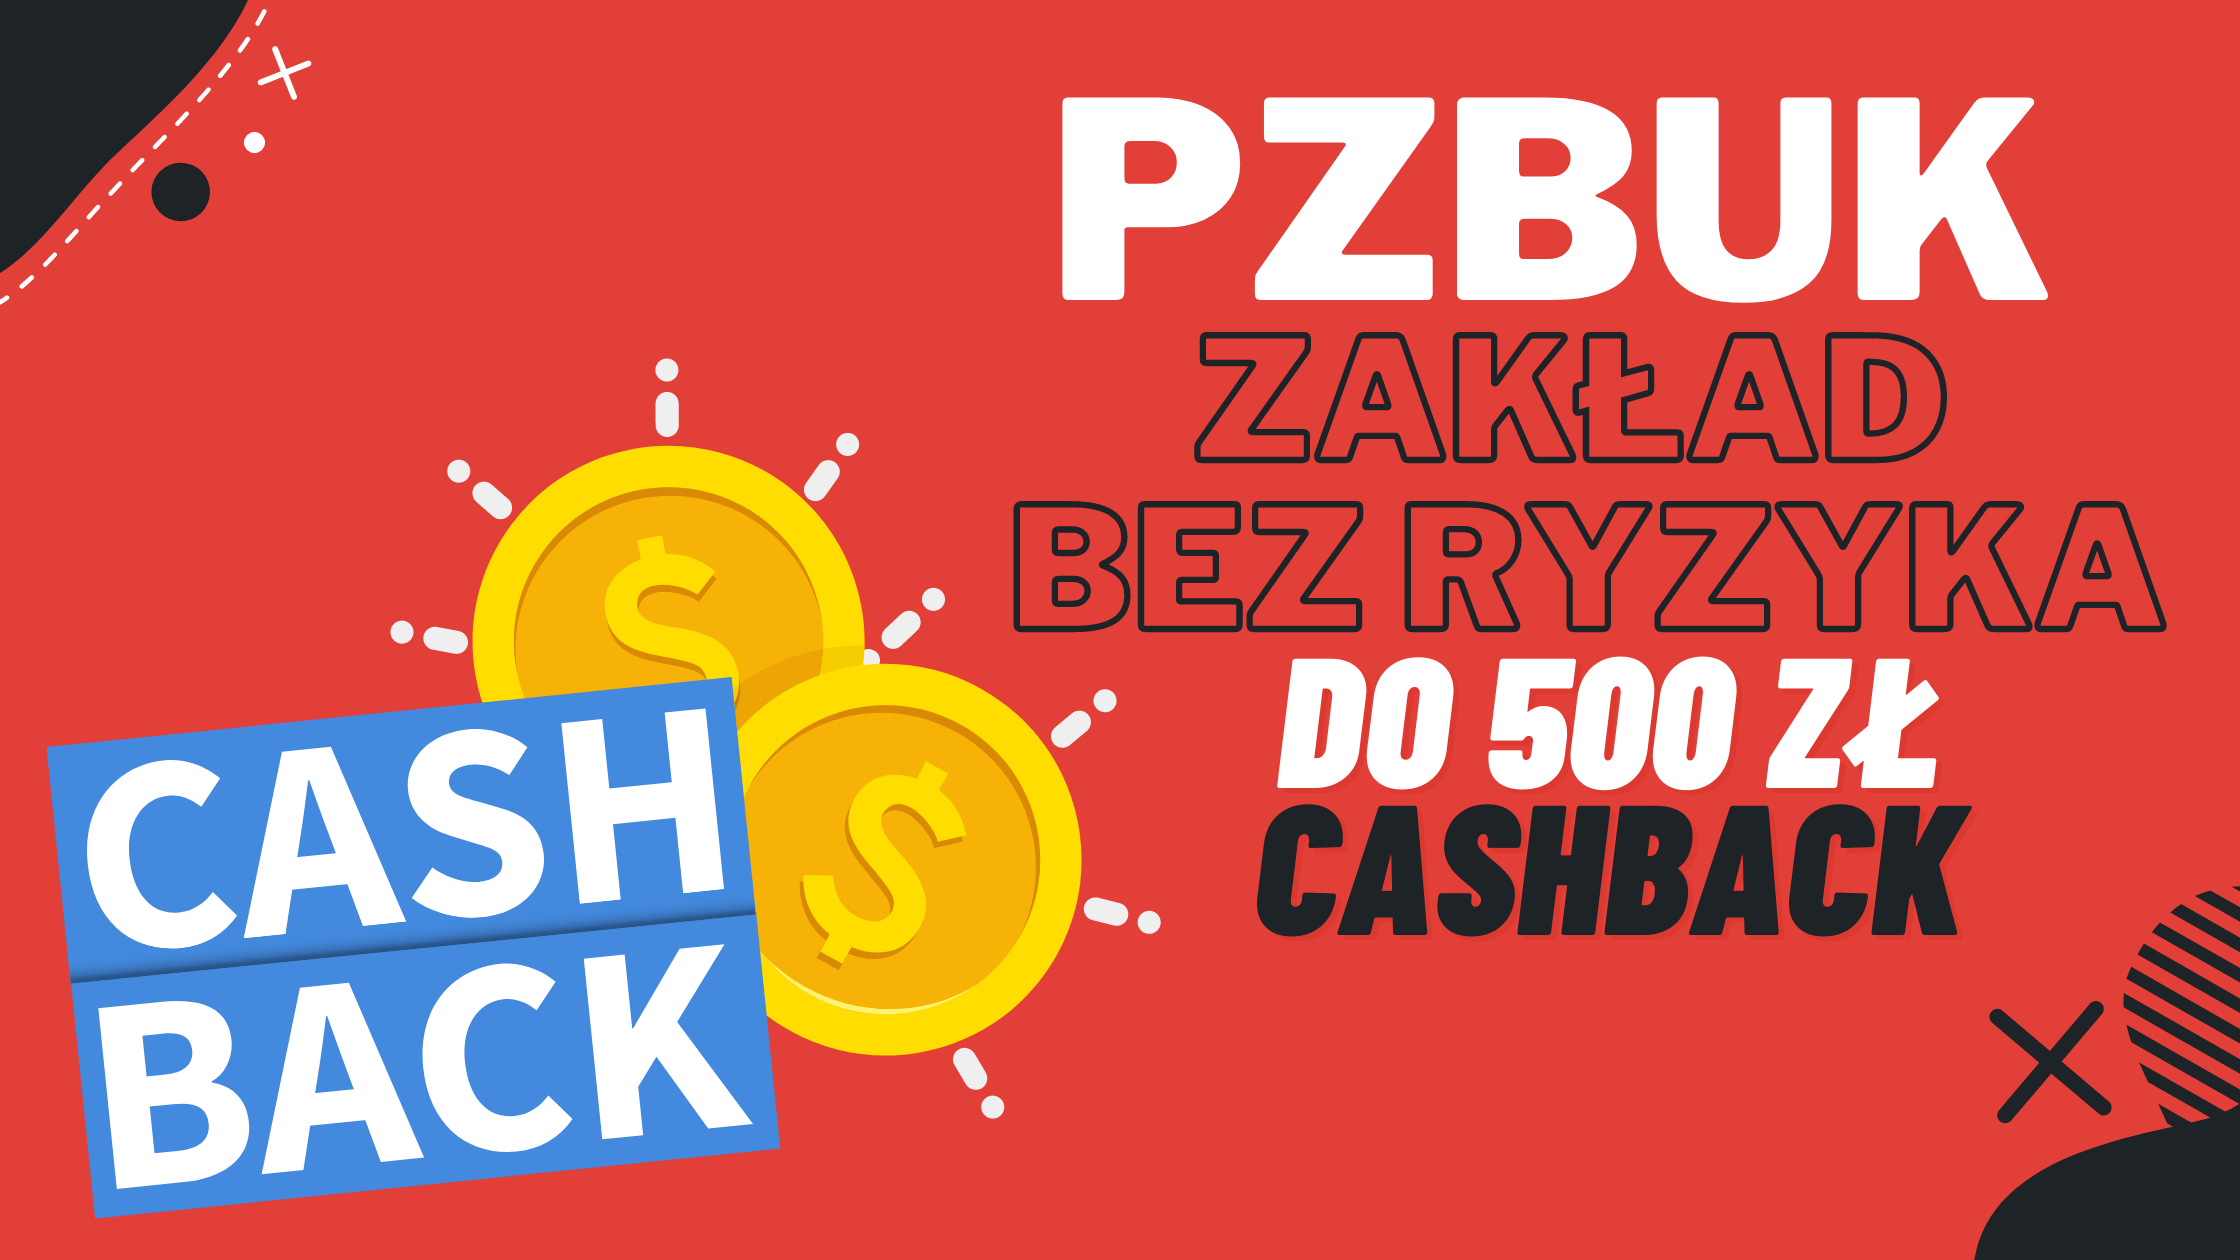 Bukmacher PZBuk zakłady bez ryzyka do 500 zł cashback